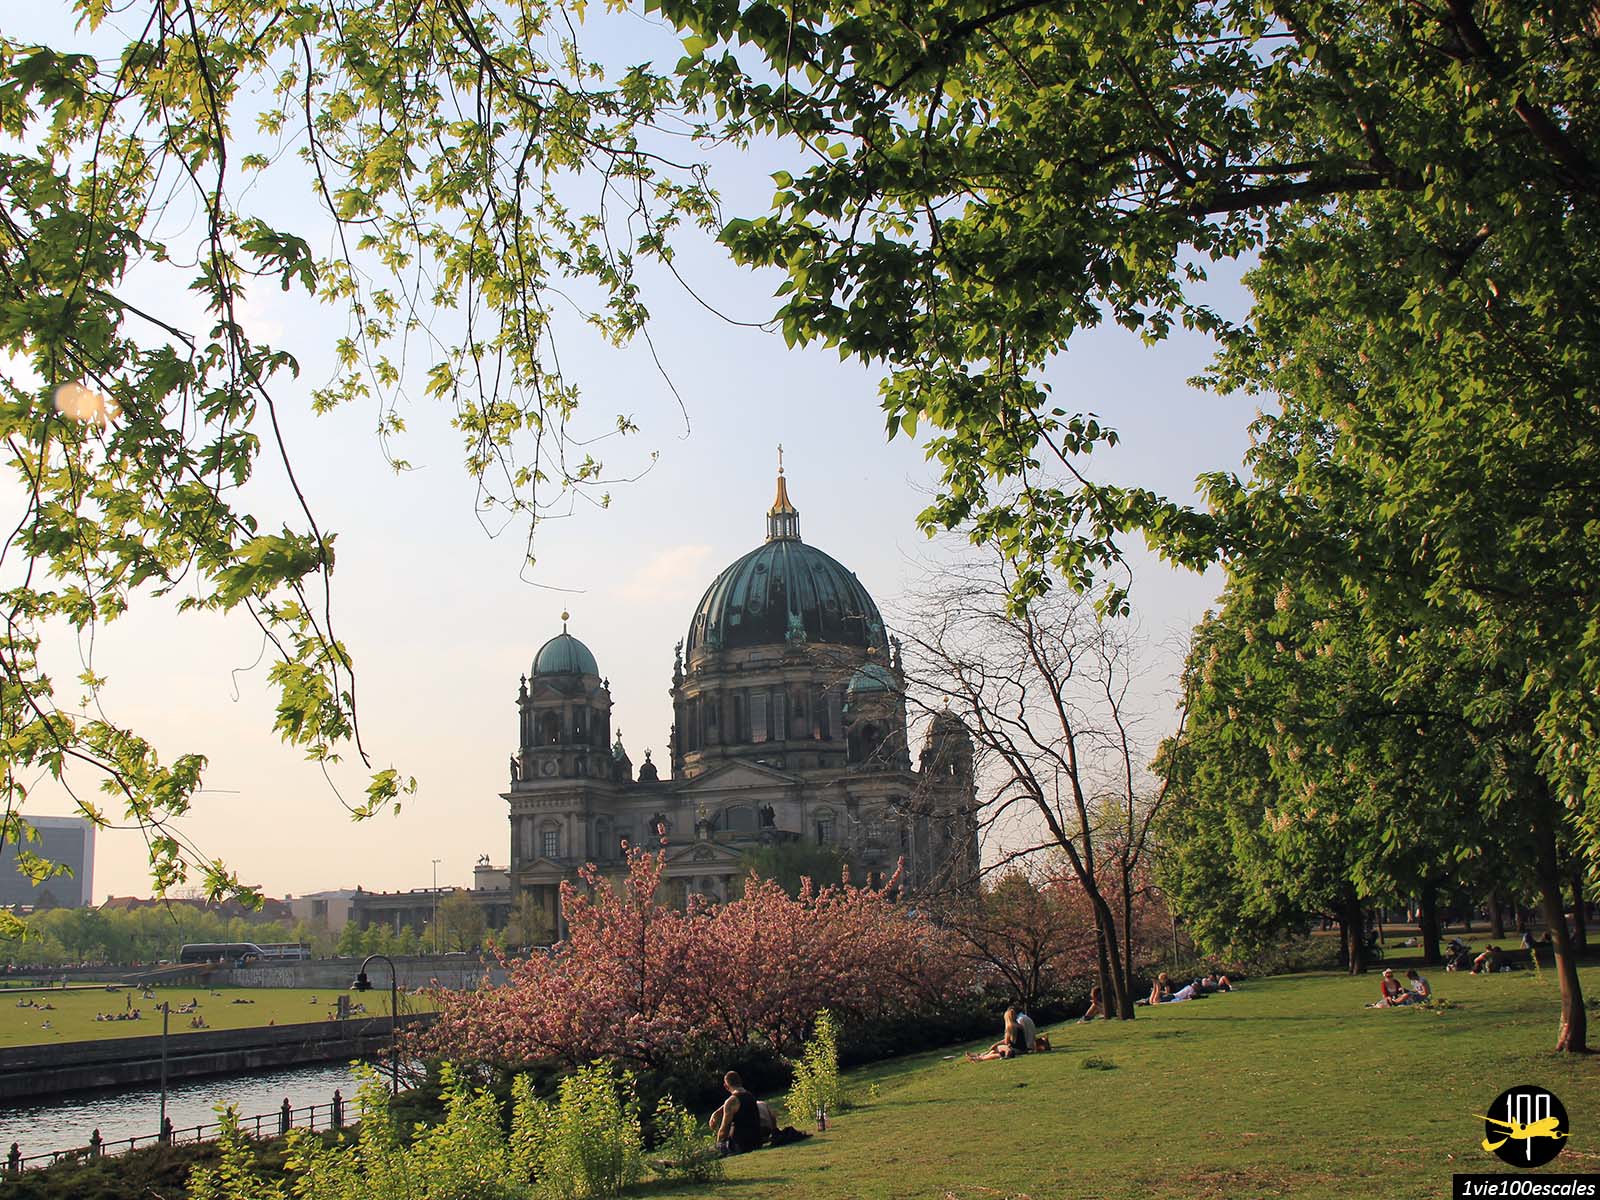 La cathédrale de Berlin, connue là-bas sous le nom de Berliner Dom, est l'une des attractions touristiques les plus importantes de la capitale allemande